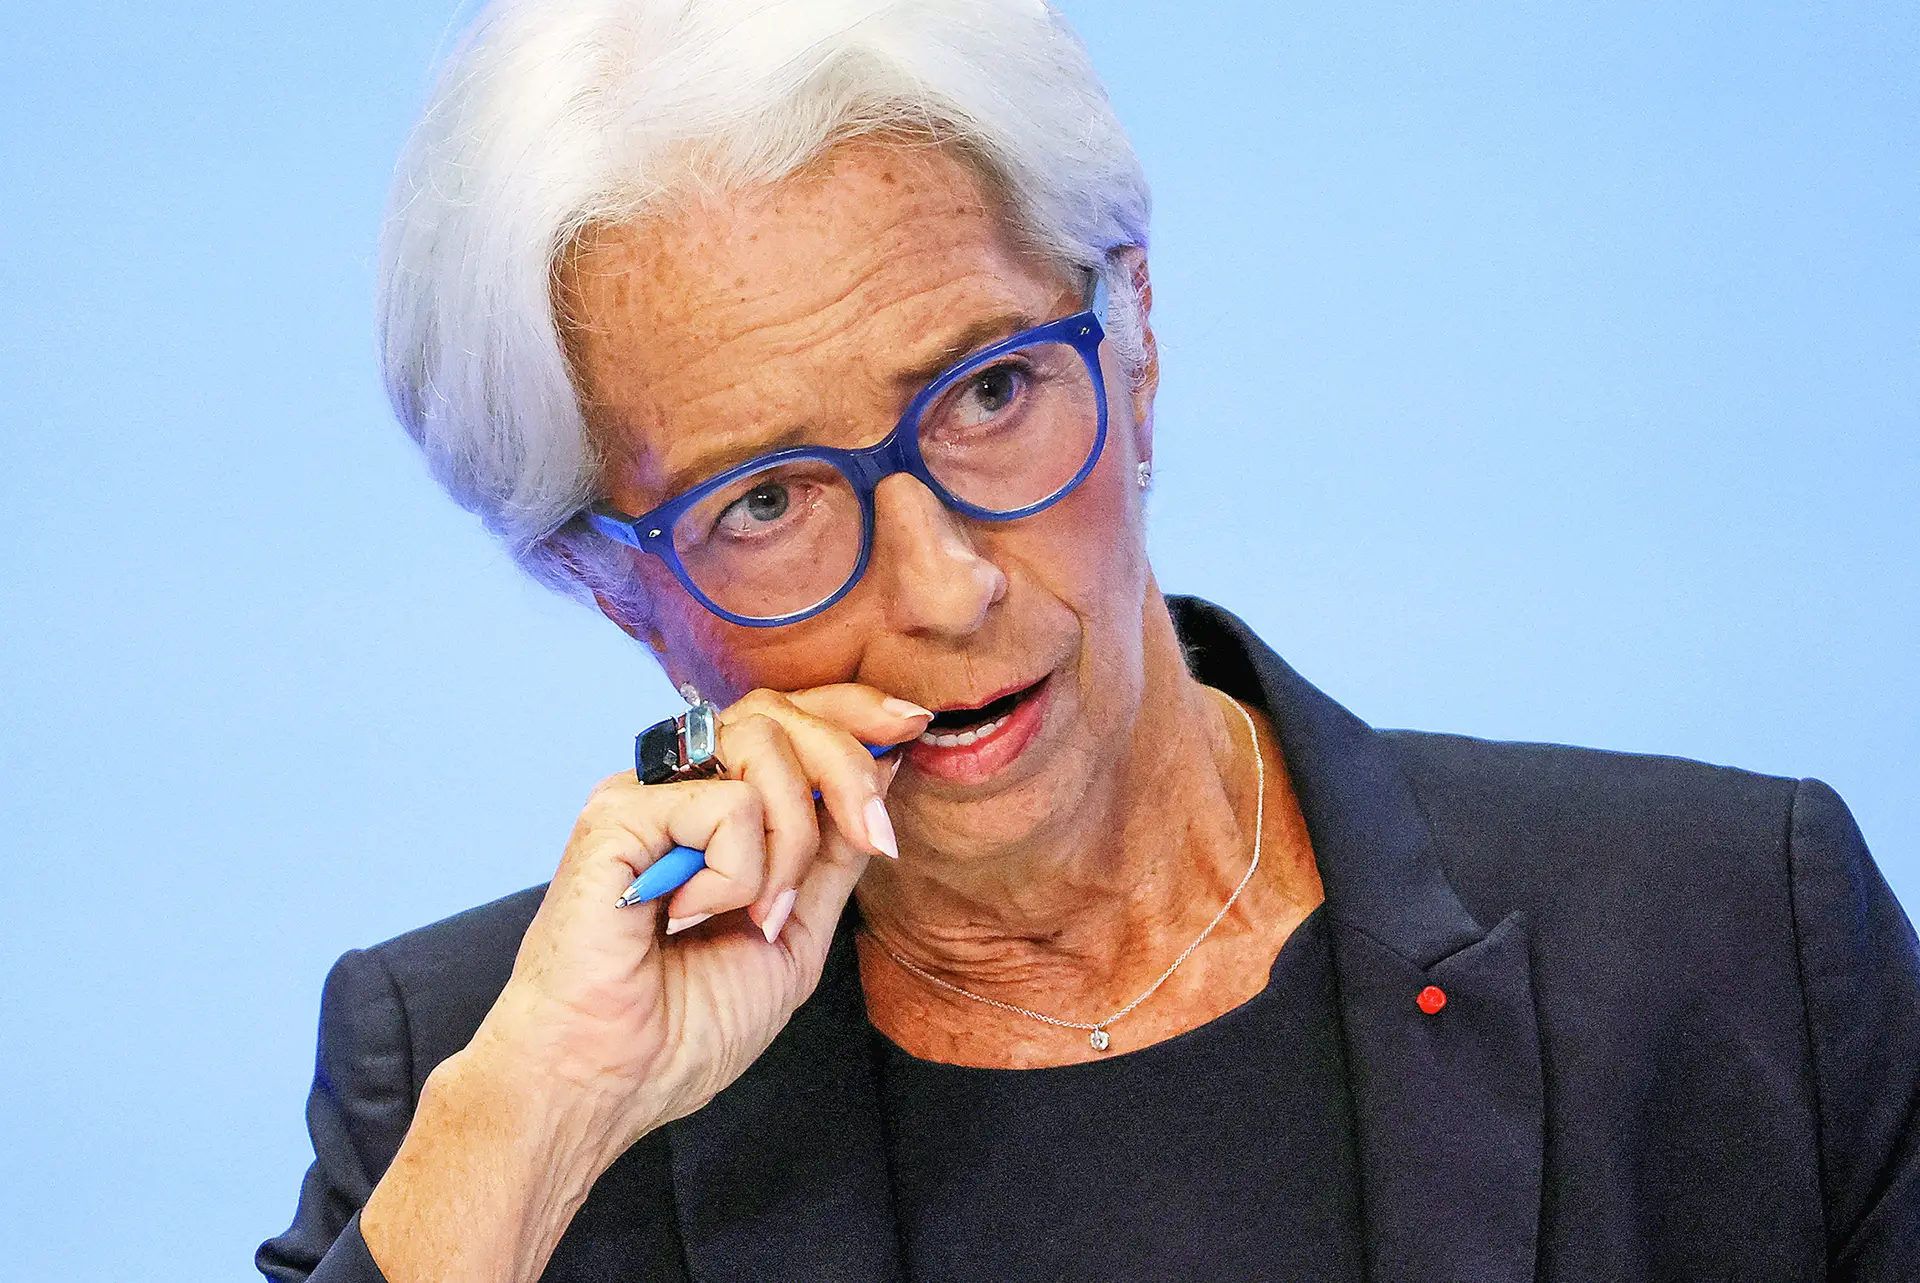 Christine Lagarde travou o ataque especulativo no mercado da dívida, mas Itália e Grécia continuam na zona vermelha